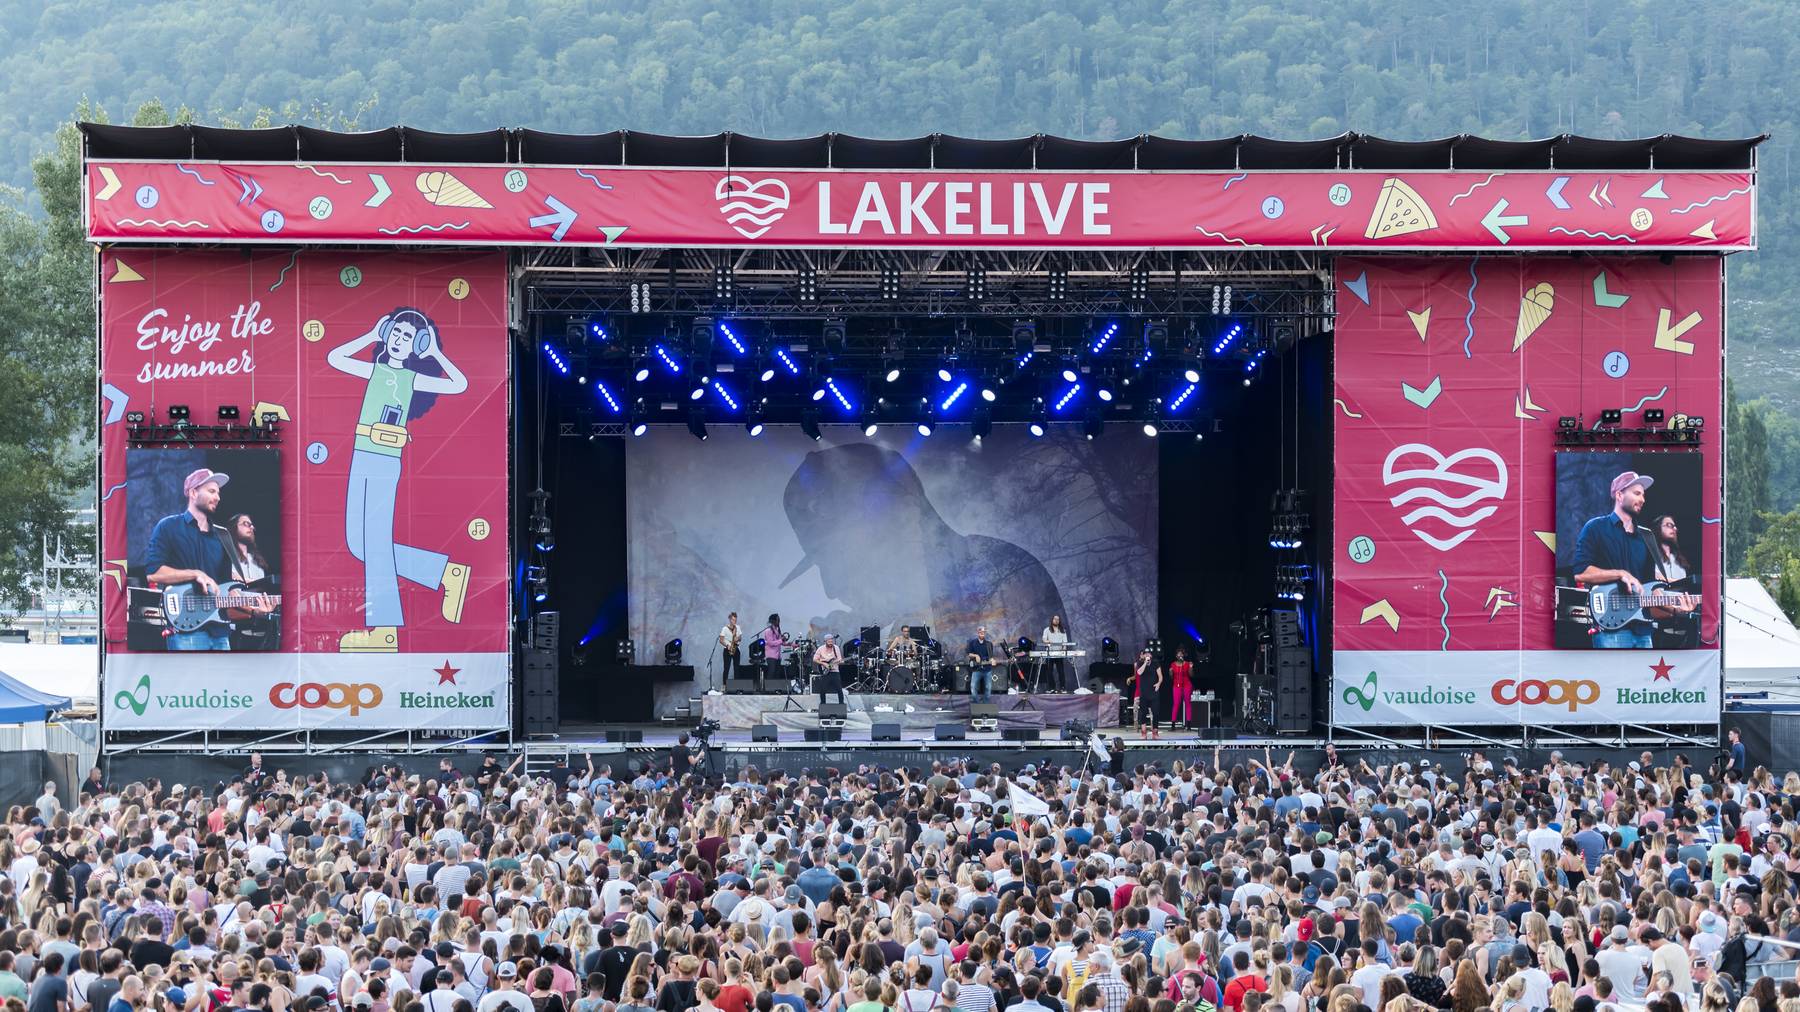 2018 fand die erste Ausgabe des Lakelive Festivals statt.